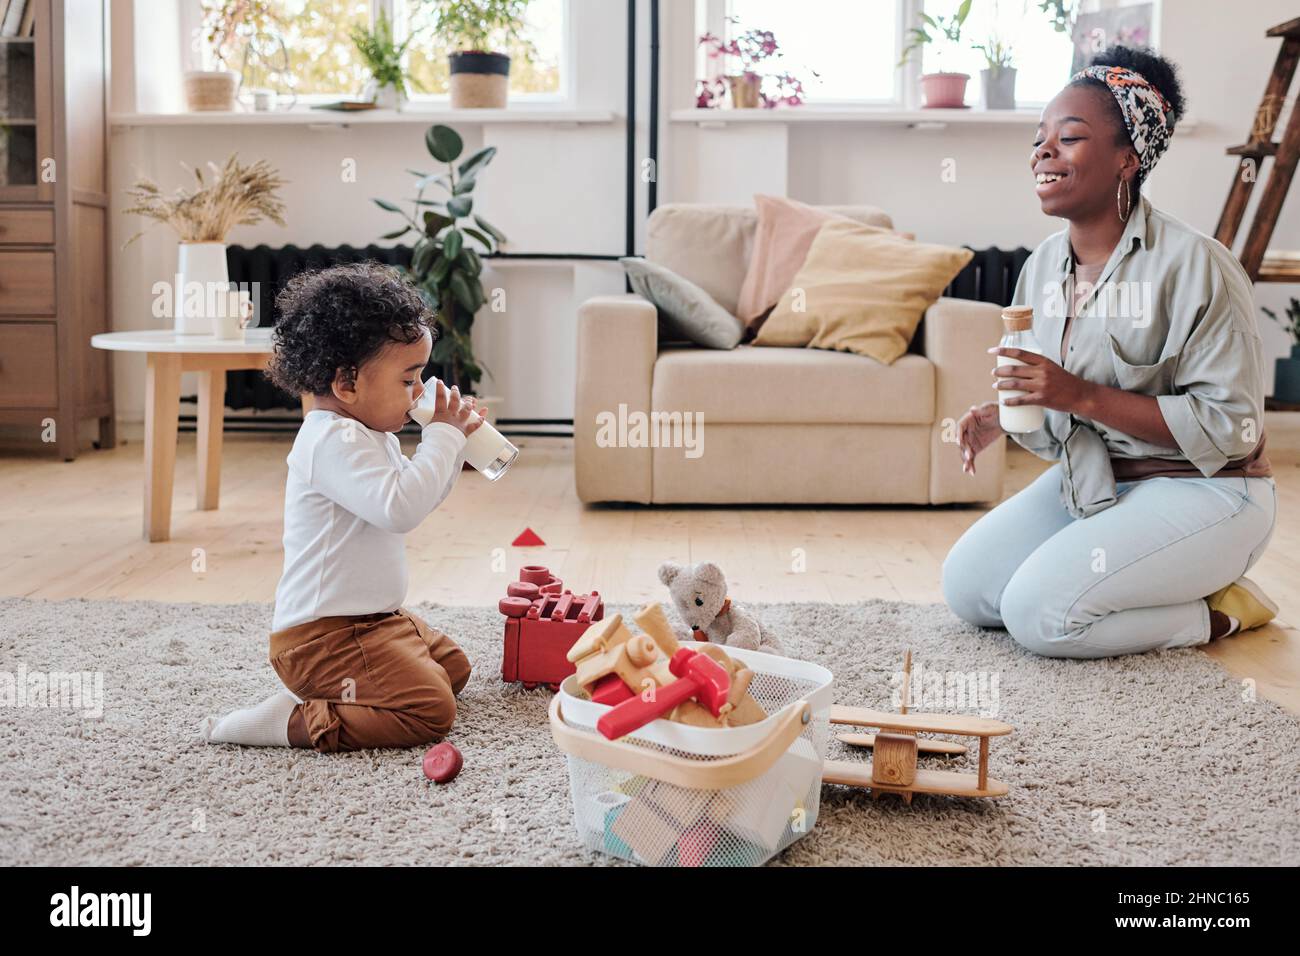 Kleiner afroamerikanischer Junge, der mit Spielzeug auf dem Teppich sitzt und Milch trinkt, während eine positive junge Mutter ihn anschaut Stockfoto